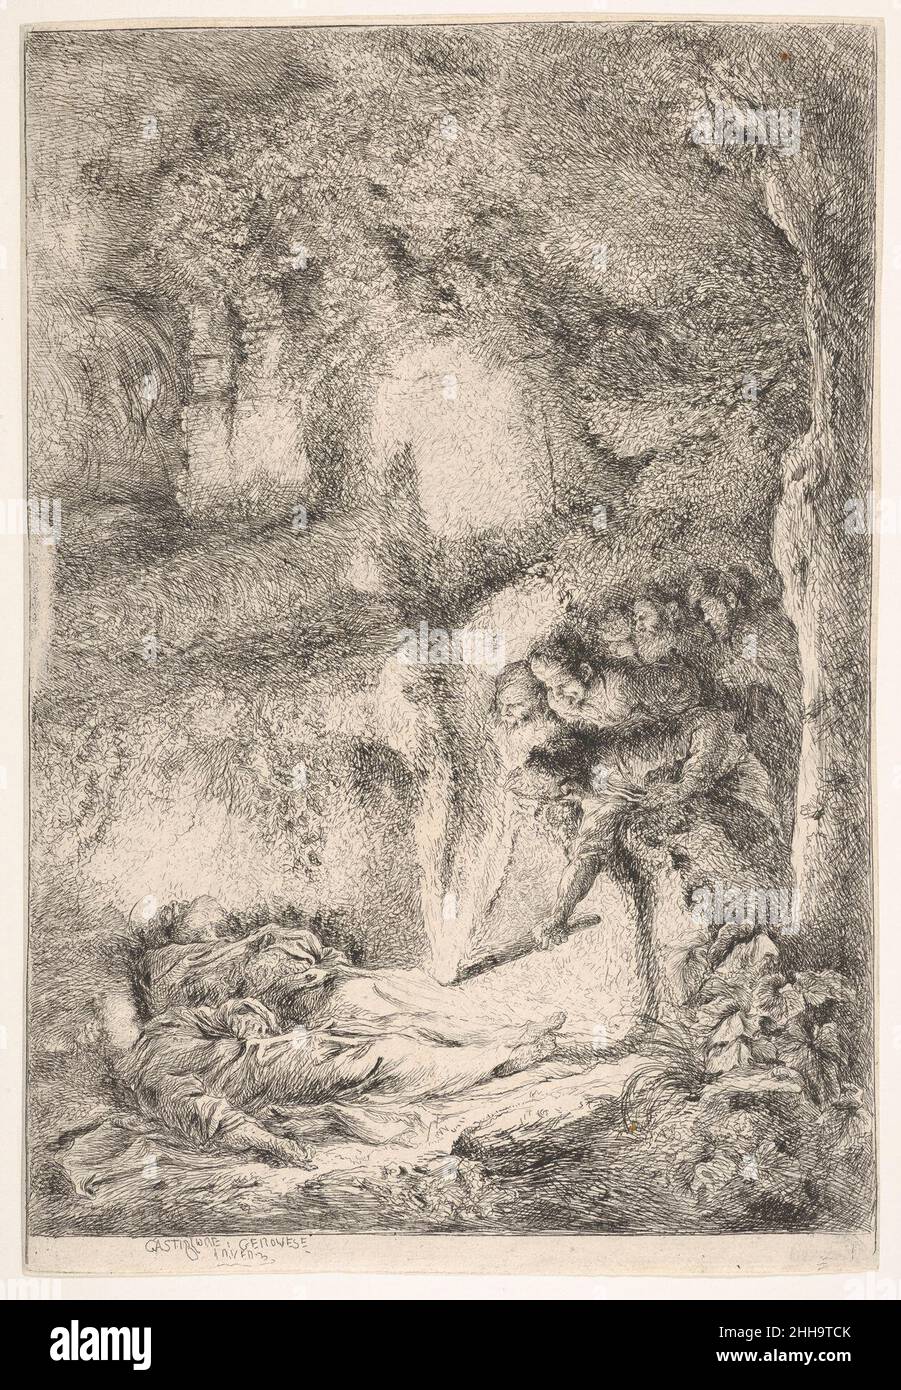 Trovare i corpi dei Santi Pietro e Paolo ca. 1647–51 Giovanni Benedetto Castiglione (il Grechetto) l'italiano Castiglione è considerato uno dei più innovativi stampatori del XVII secolo, e questo è uno dei dieci incisioni da lui provenienti dalla collezione Massar. Molte delle sue stampe affrontano la transizione degli sforzi terreni, della morte e della decadenza. Castiglione fu fortemente influenzato dalle stampe di Rembrandt e dal loro tenebrismo (da tenebroso, suggerendo oscurità), e cercò anche soggetti religiosi che sarebbero stati valorizzati da un ambiente cupo. Questa stampa raffigura il vault sull'Appia W. Foto Stock